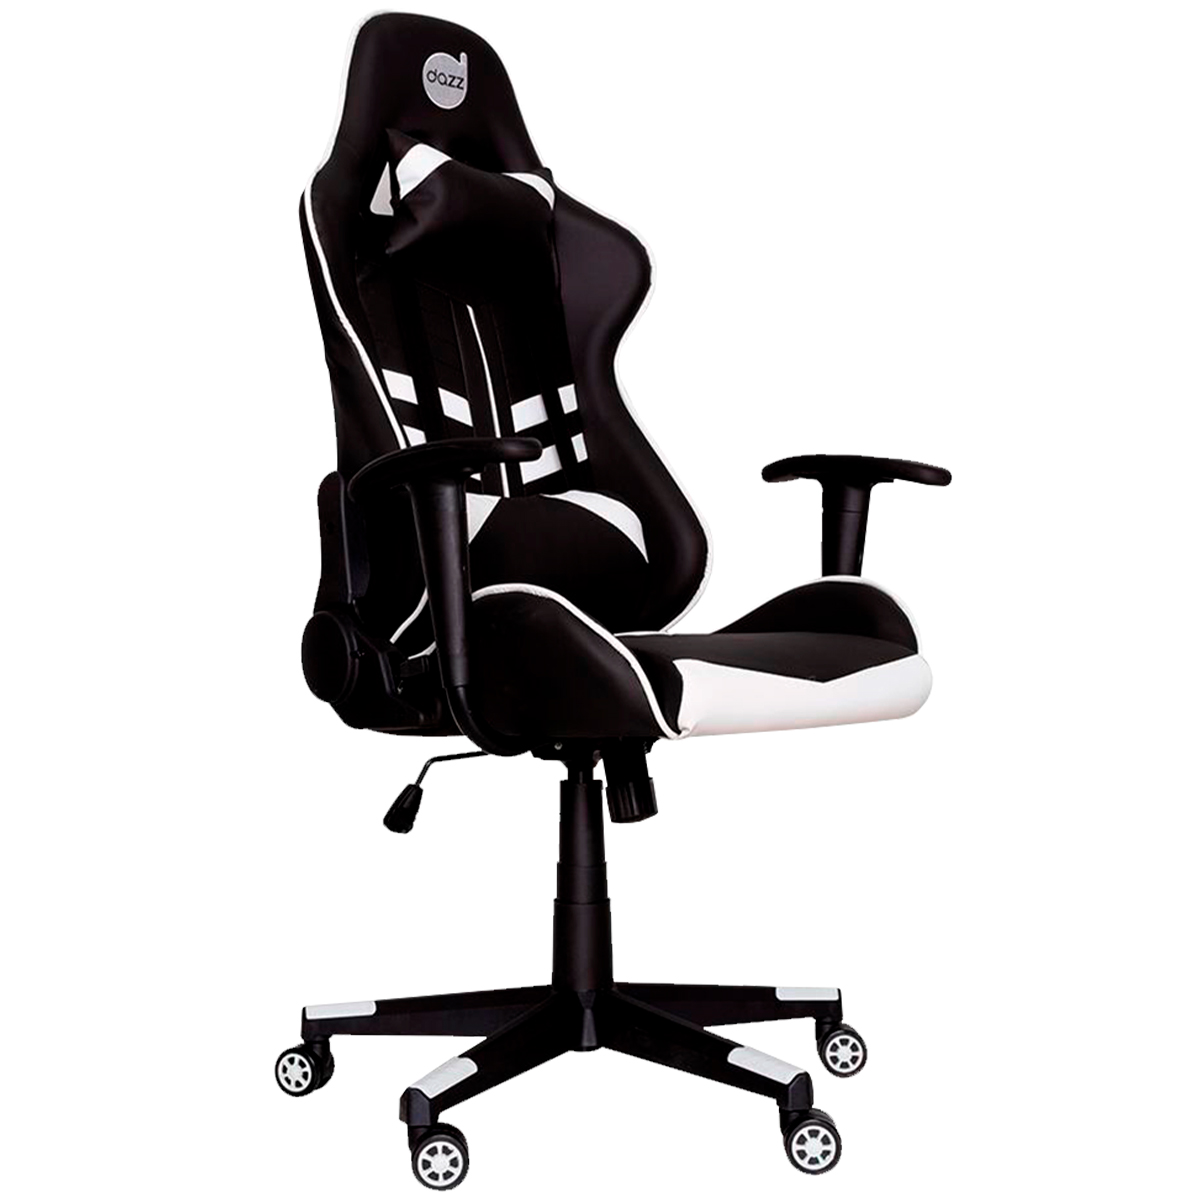 Cadeira Gamer Dazz Prime-X - Encosto Reclinável de 180° - Construção em Aço - 62000011 - Preto e Branco